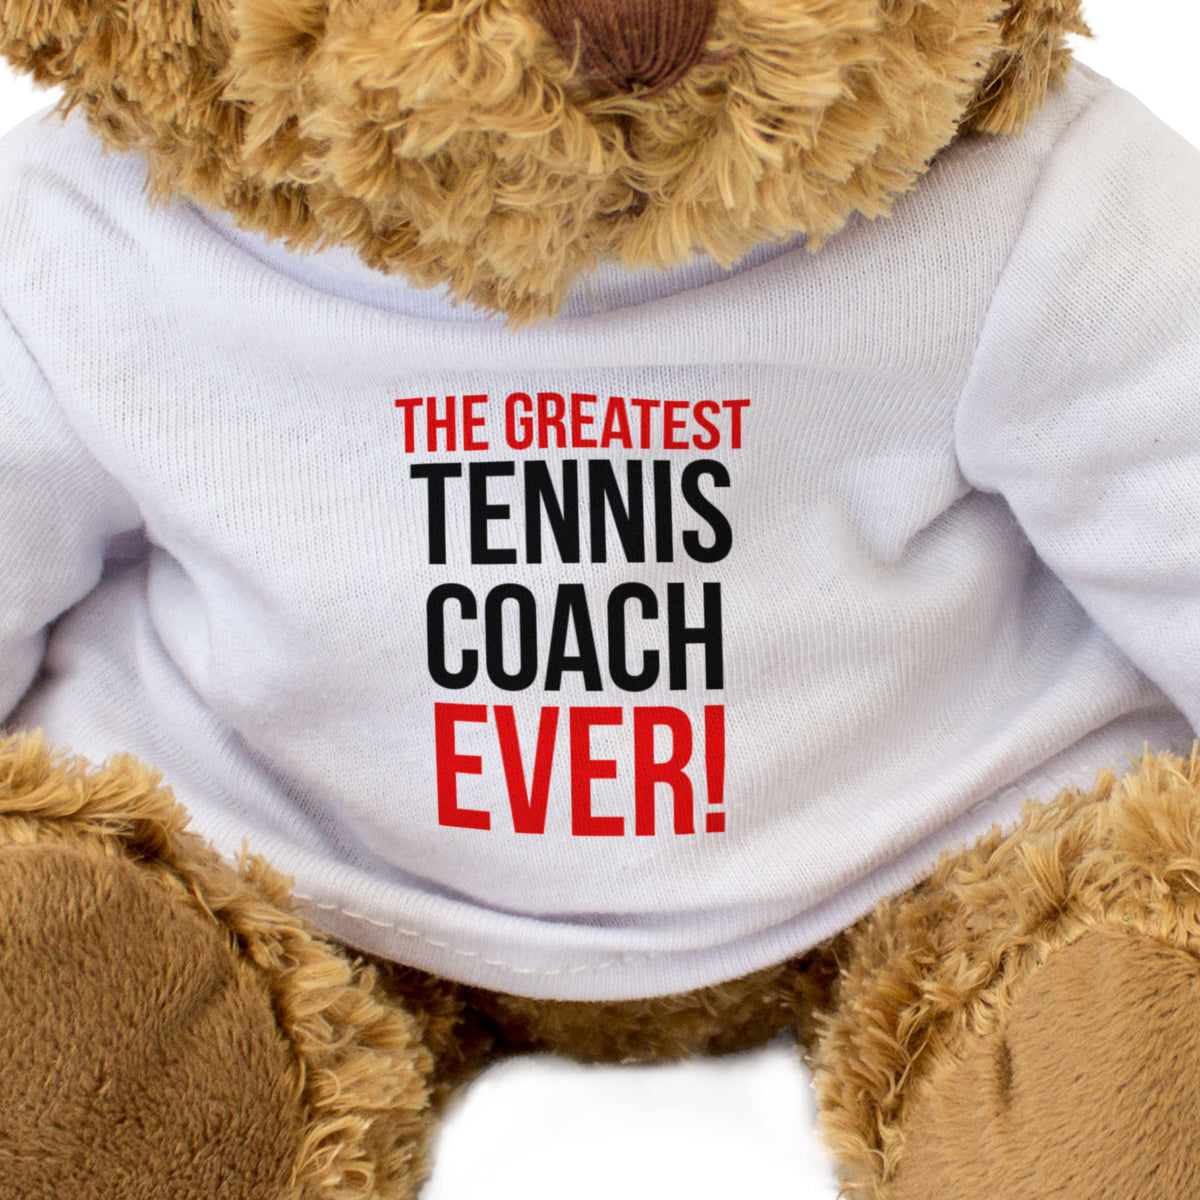 The Greatest Tennis Coach Ever - Teddy Bear